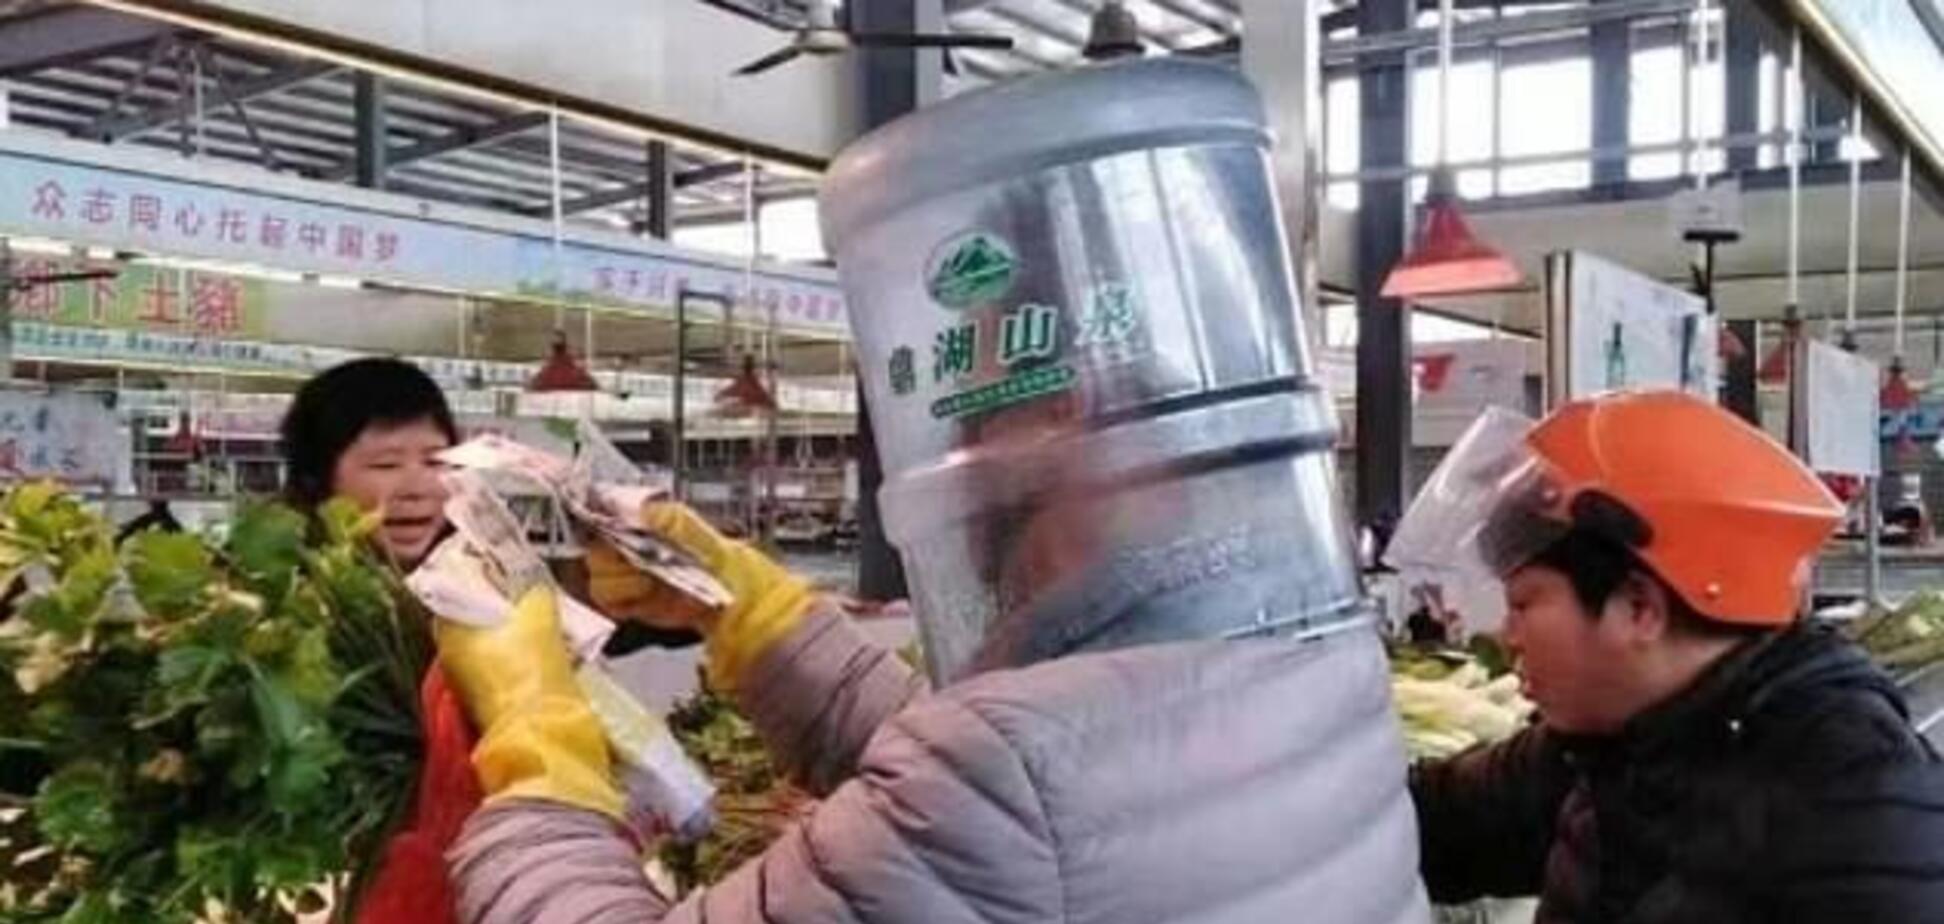 Вместо маски – каски и бутылки: неожиданные фото паникеров из Китая 'рвут' соцсети